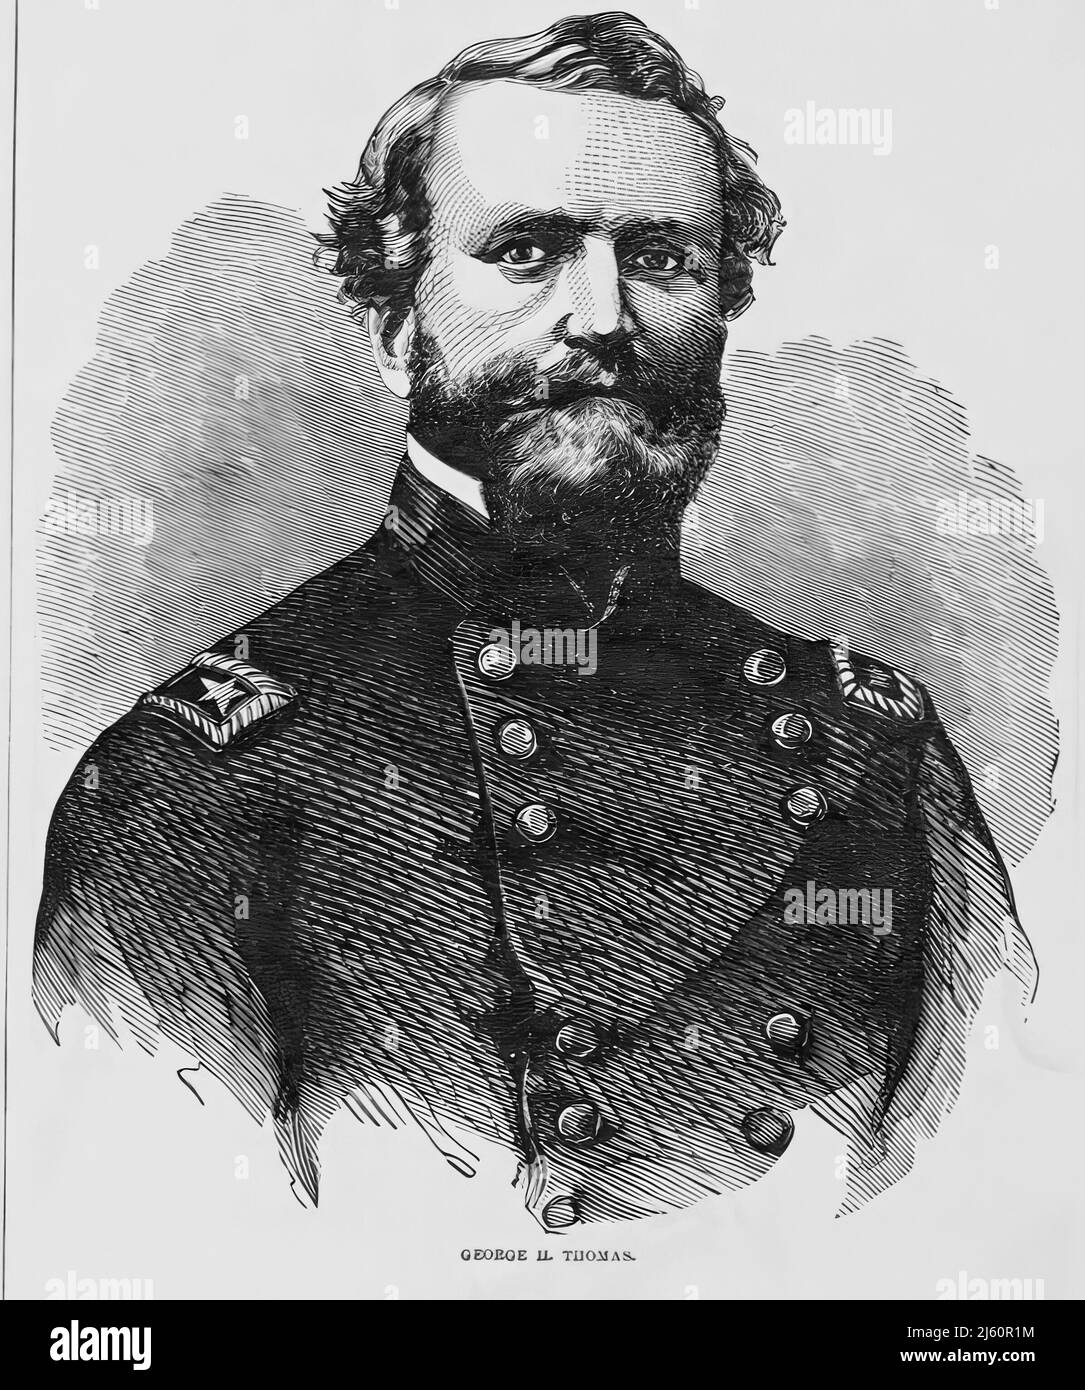 Portrait de George Henry Thomas, général de l'Armée de l'Union dans la Guerre civile américaine. illustration du siècle 19th Banque D'Images